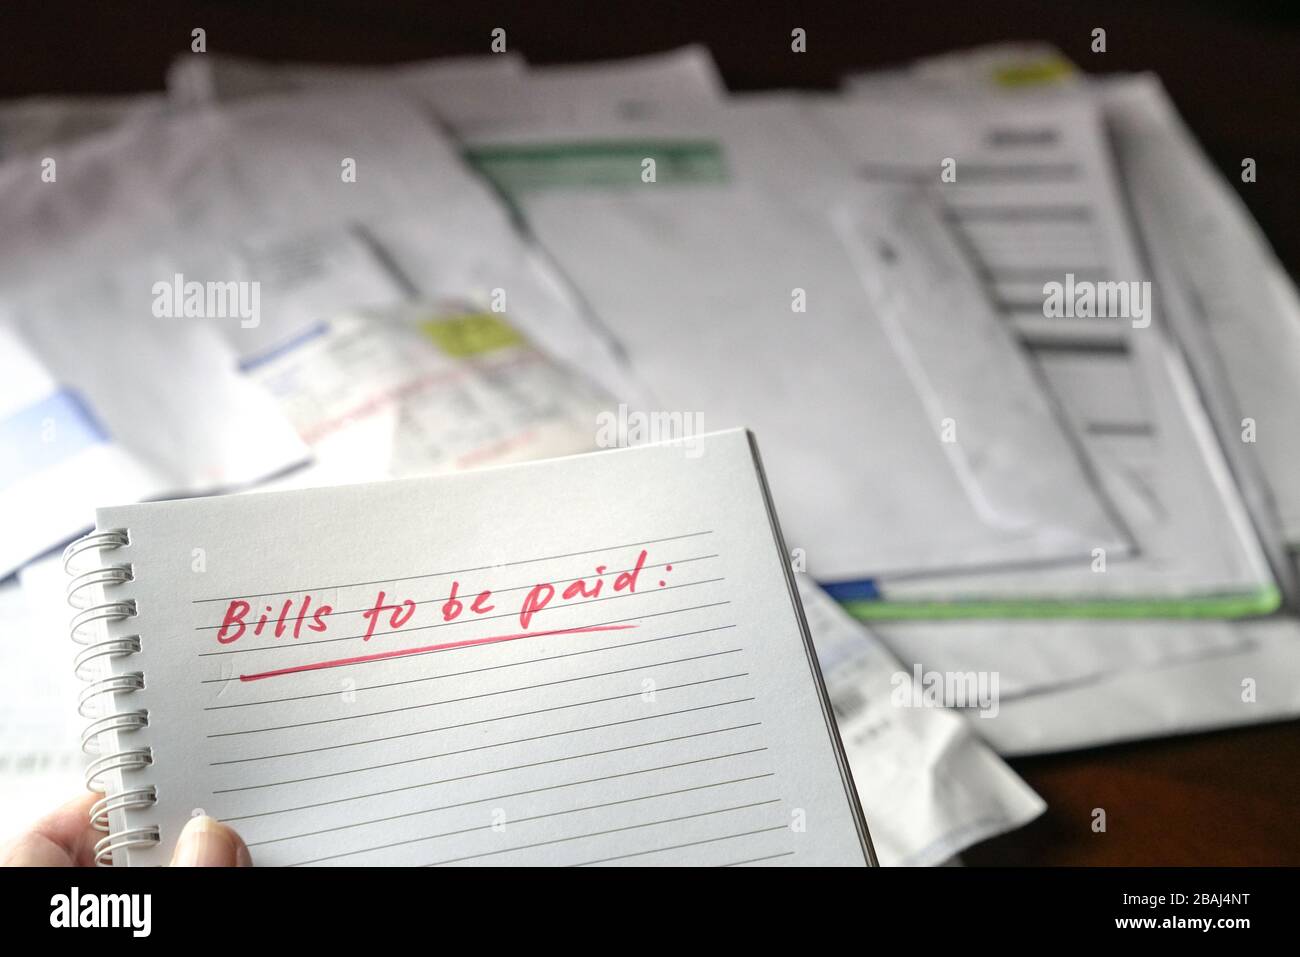 Facturas a pagar, color rojo escrito palabras en el cuaderno con facturas y facturas en el fondo. Concepto de desempleo o recesión. Foto de stock